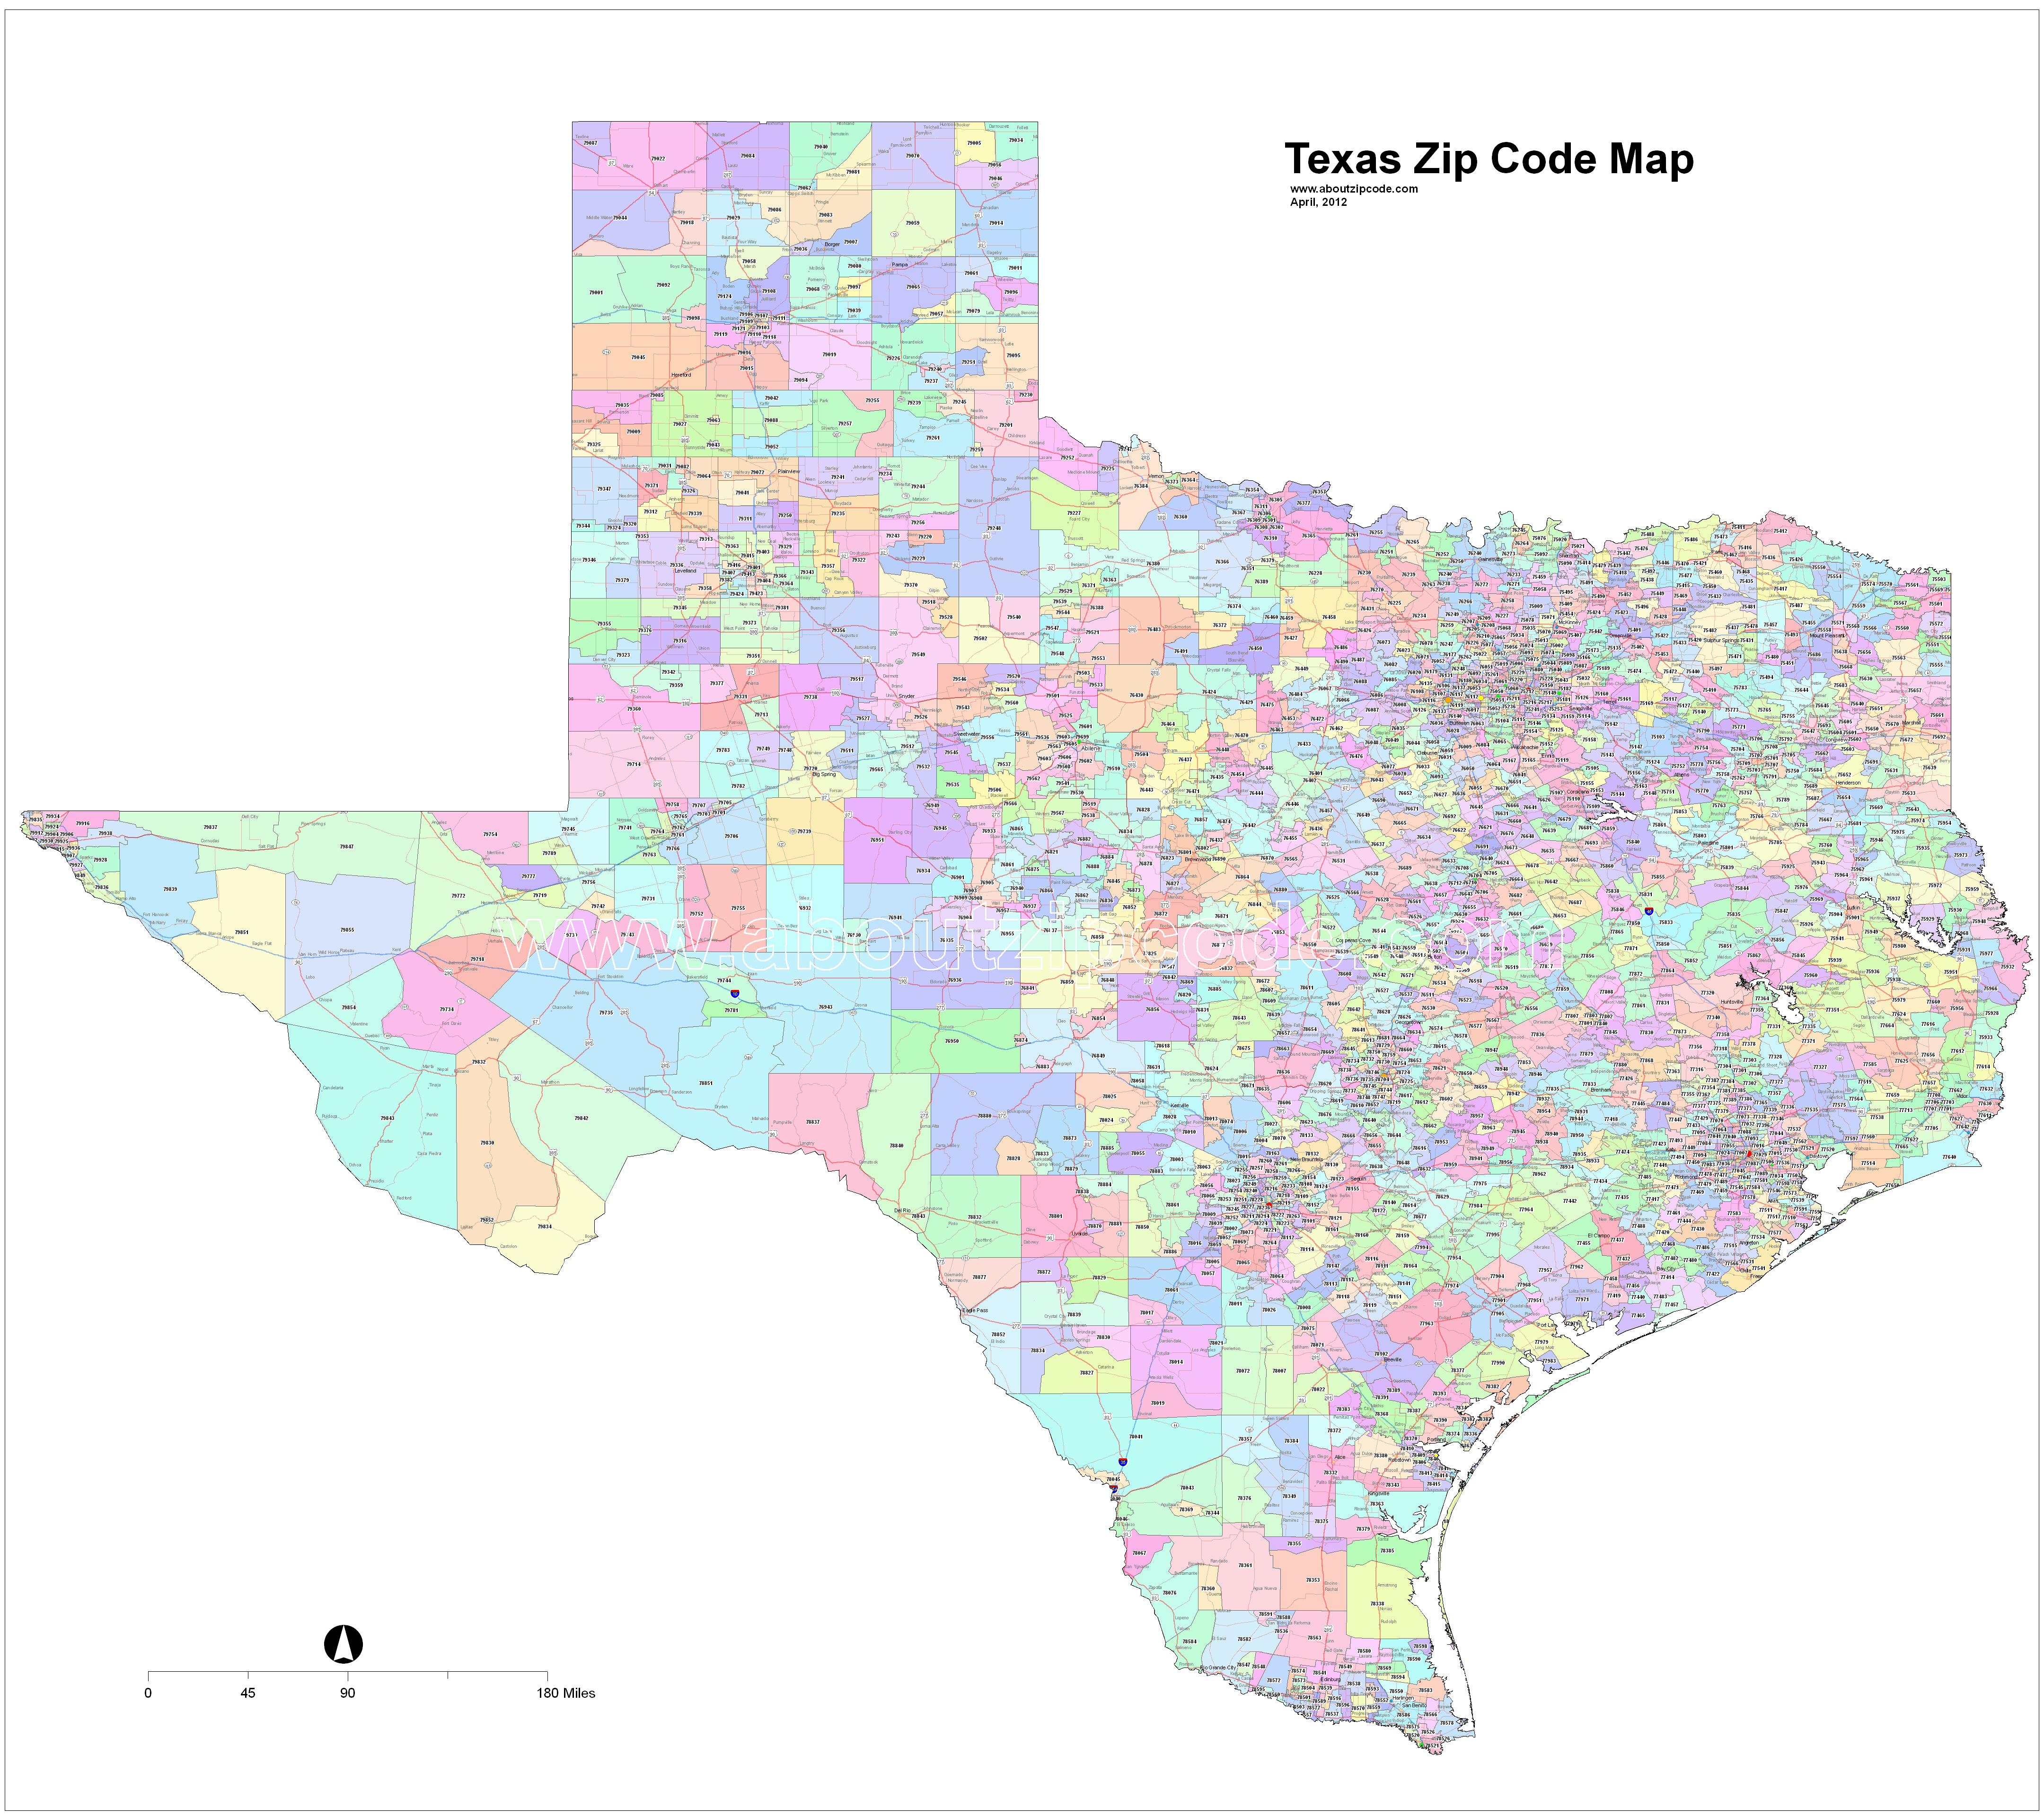 kingsville tx zip code map Texas Zip Code Maps Free Texas Zip Code Maps kingsville tx zip code map